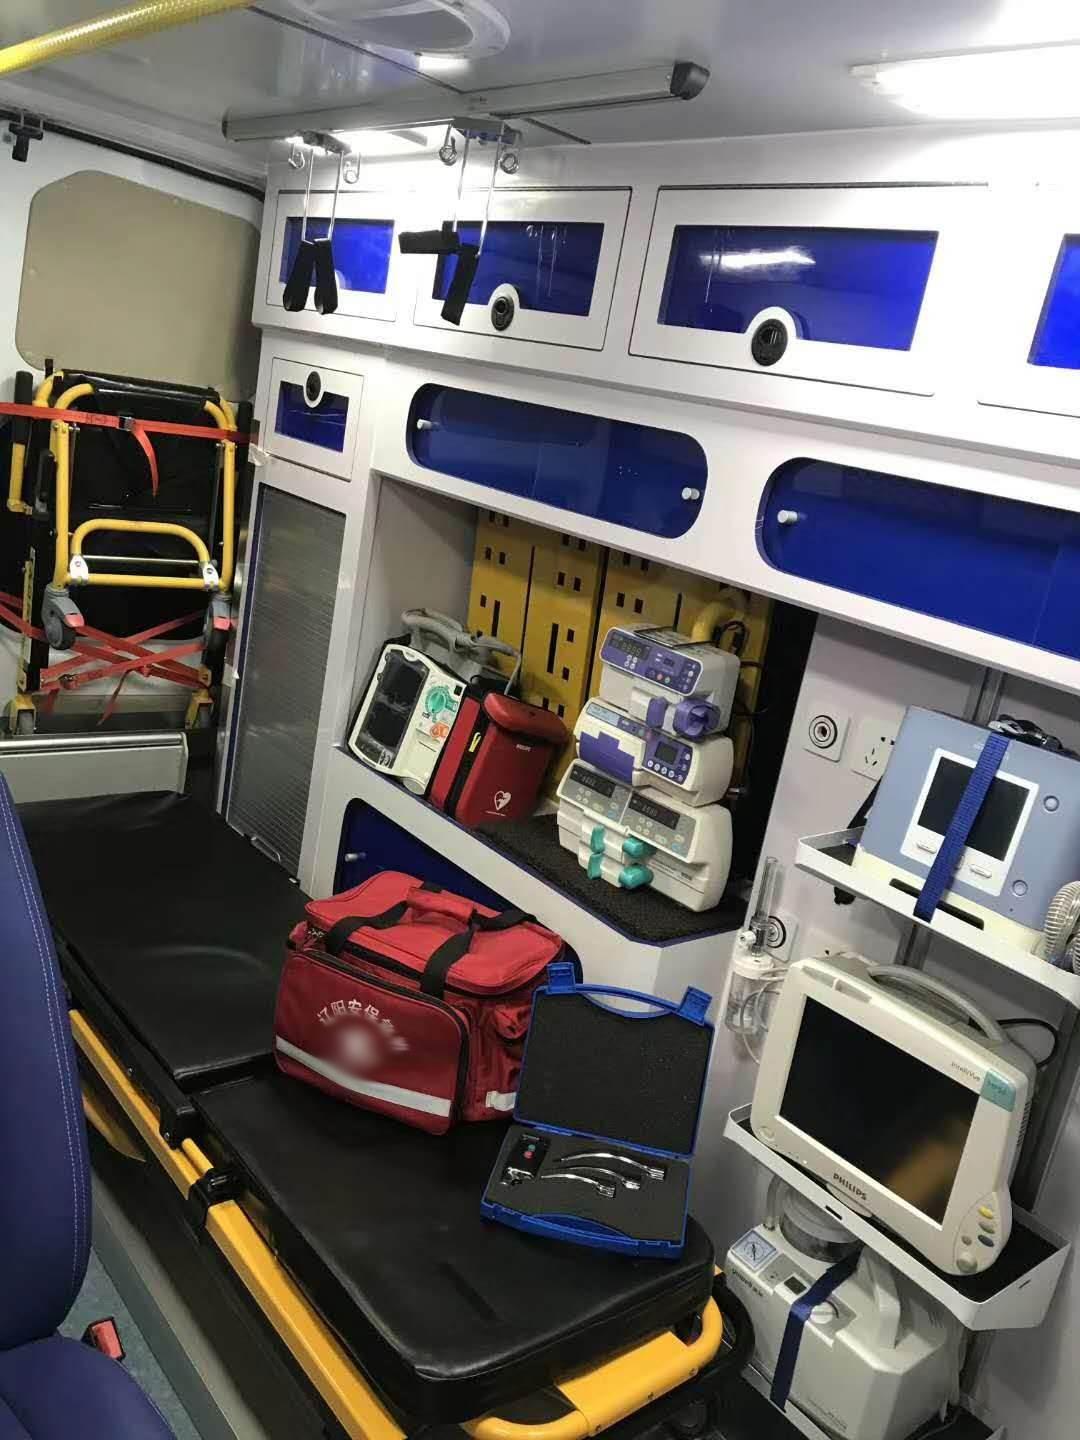 上海病人救护车出租费用